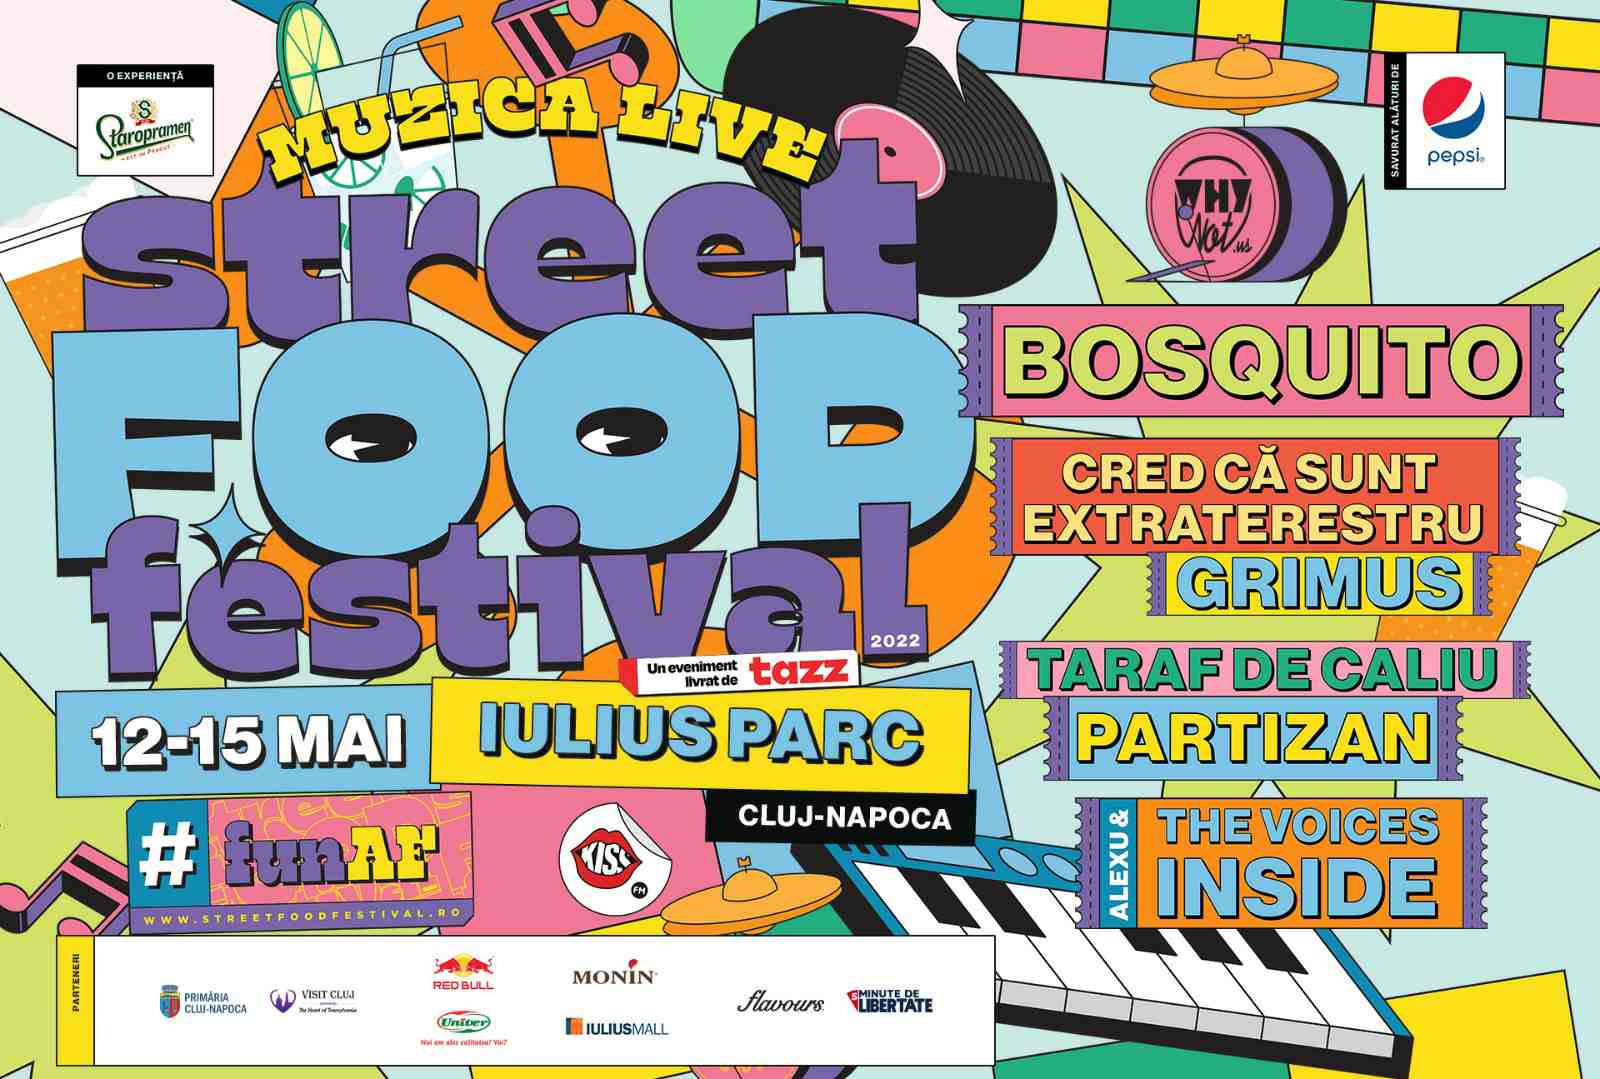 Partizan, Bosquito și Taraf de Caliu la Street FOOD Festival 2022